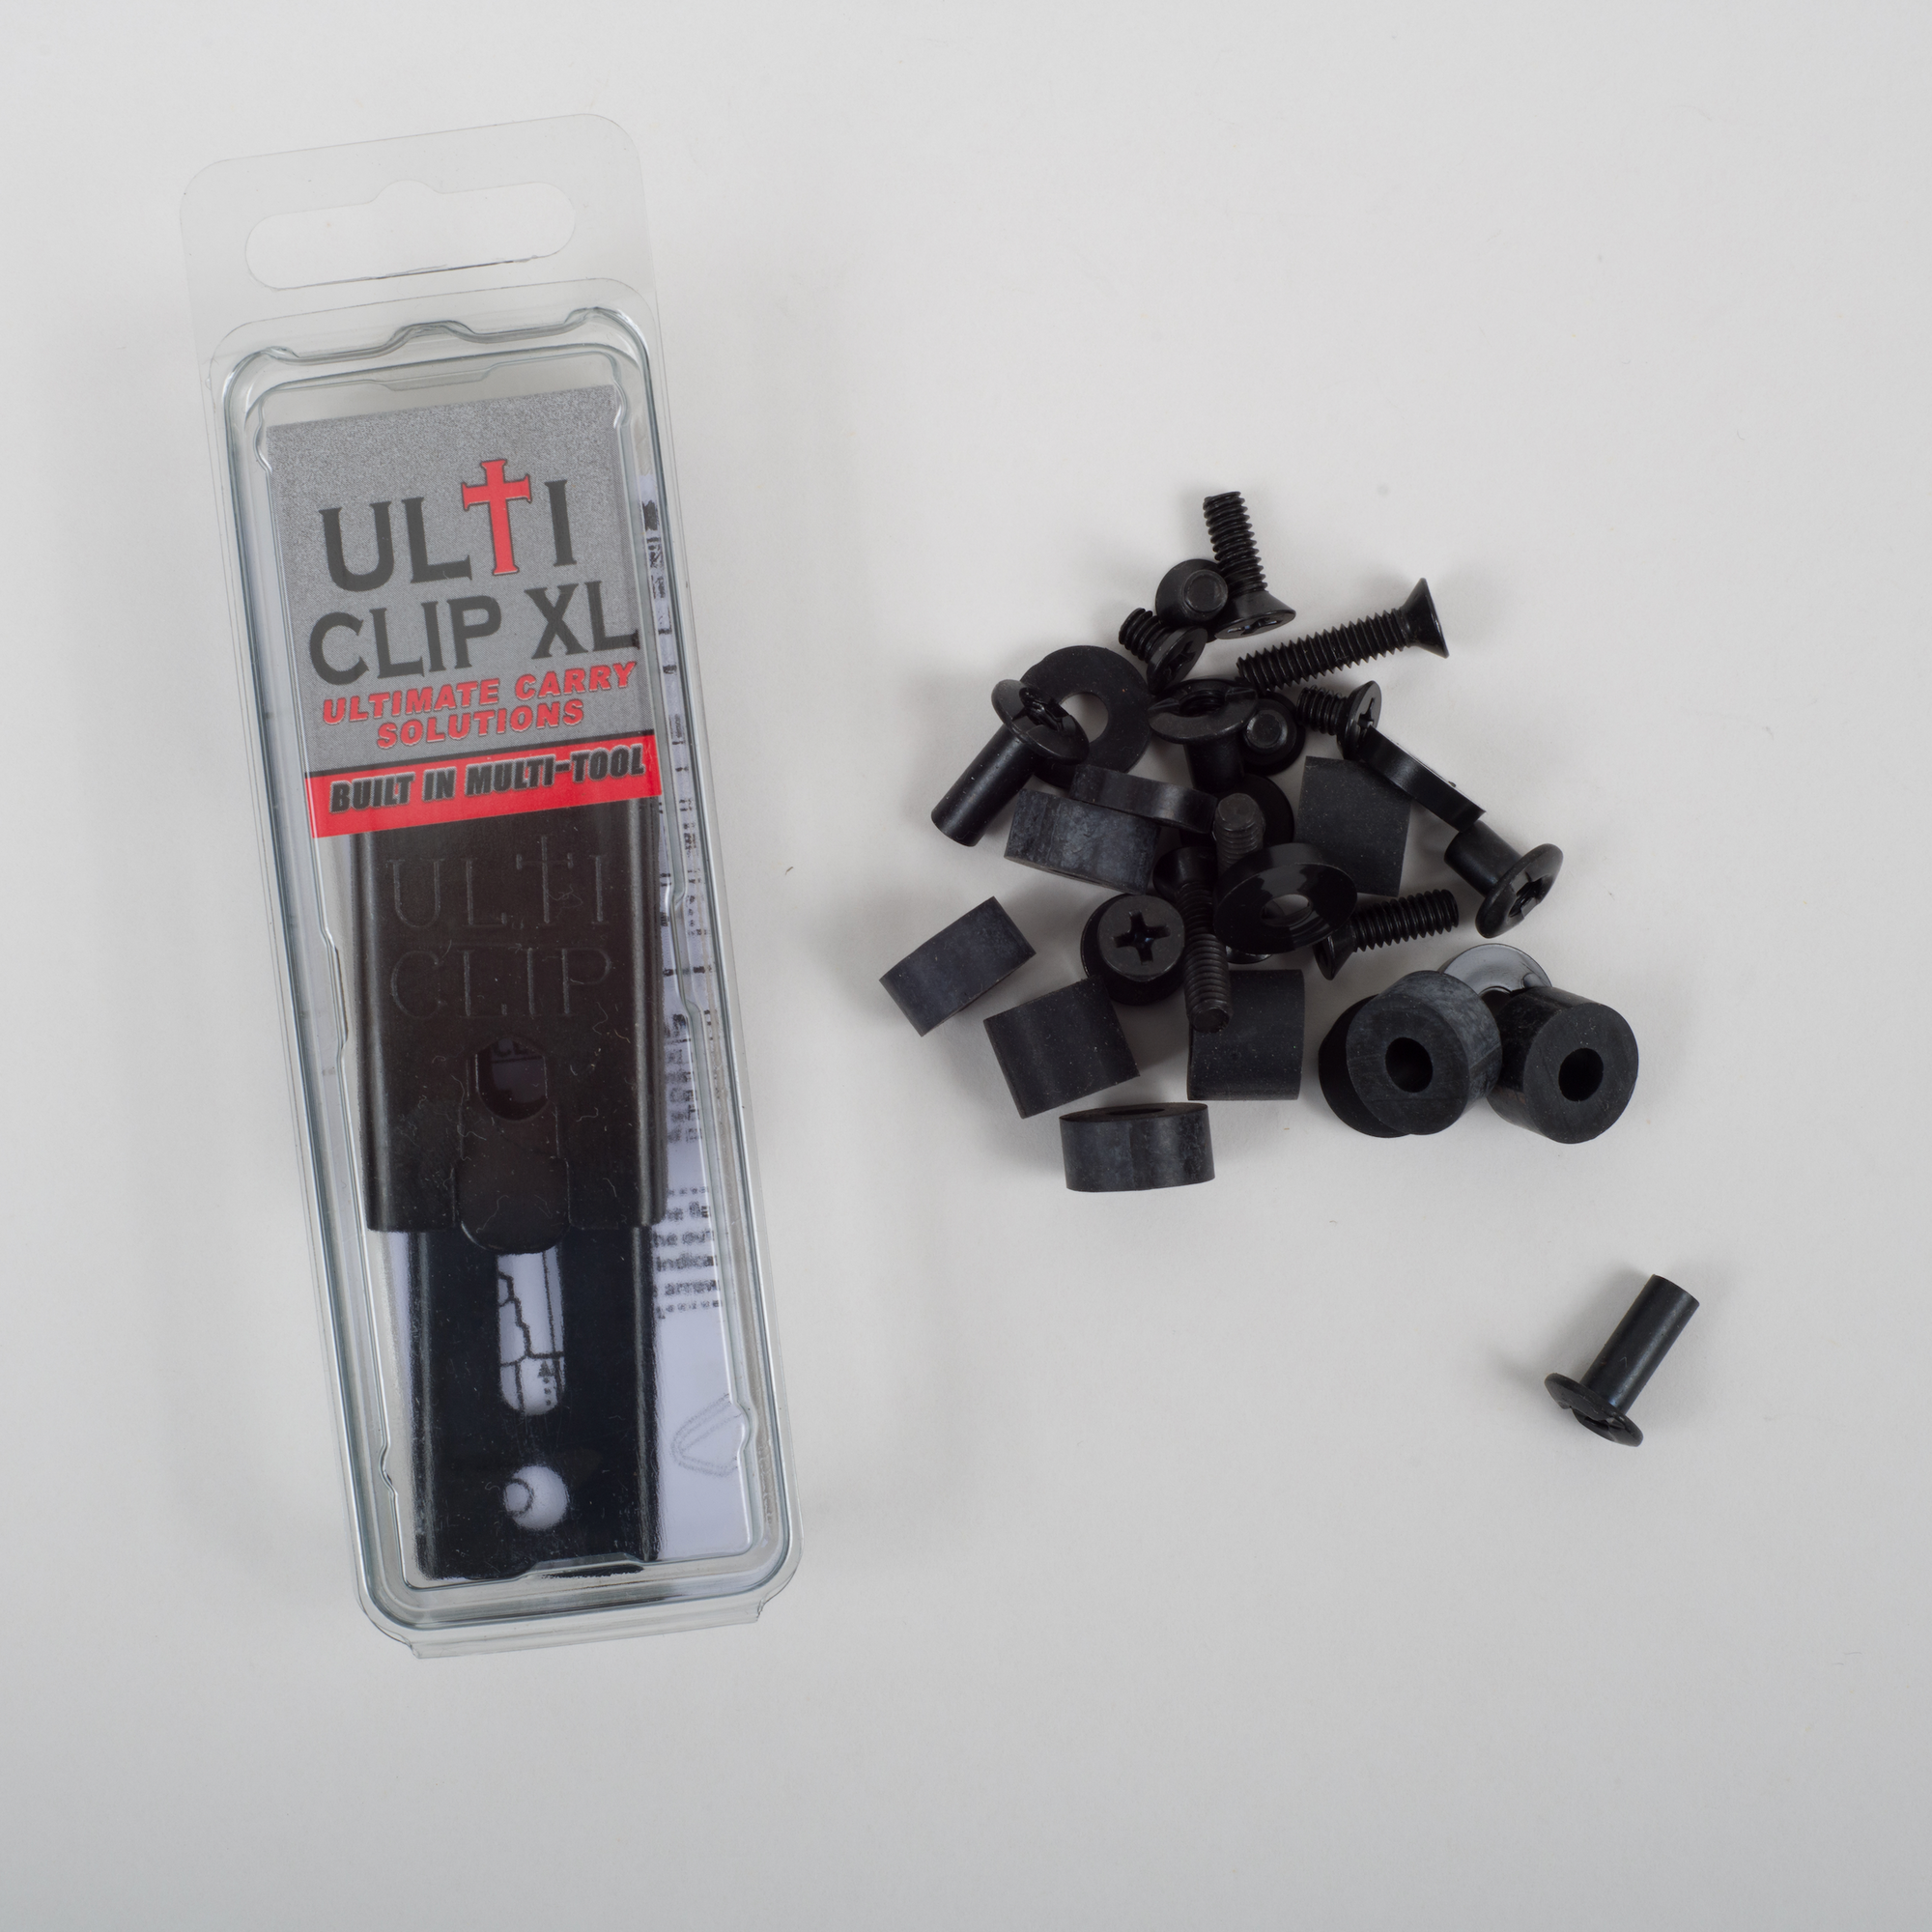 IWB UltiClip XL Kit